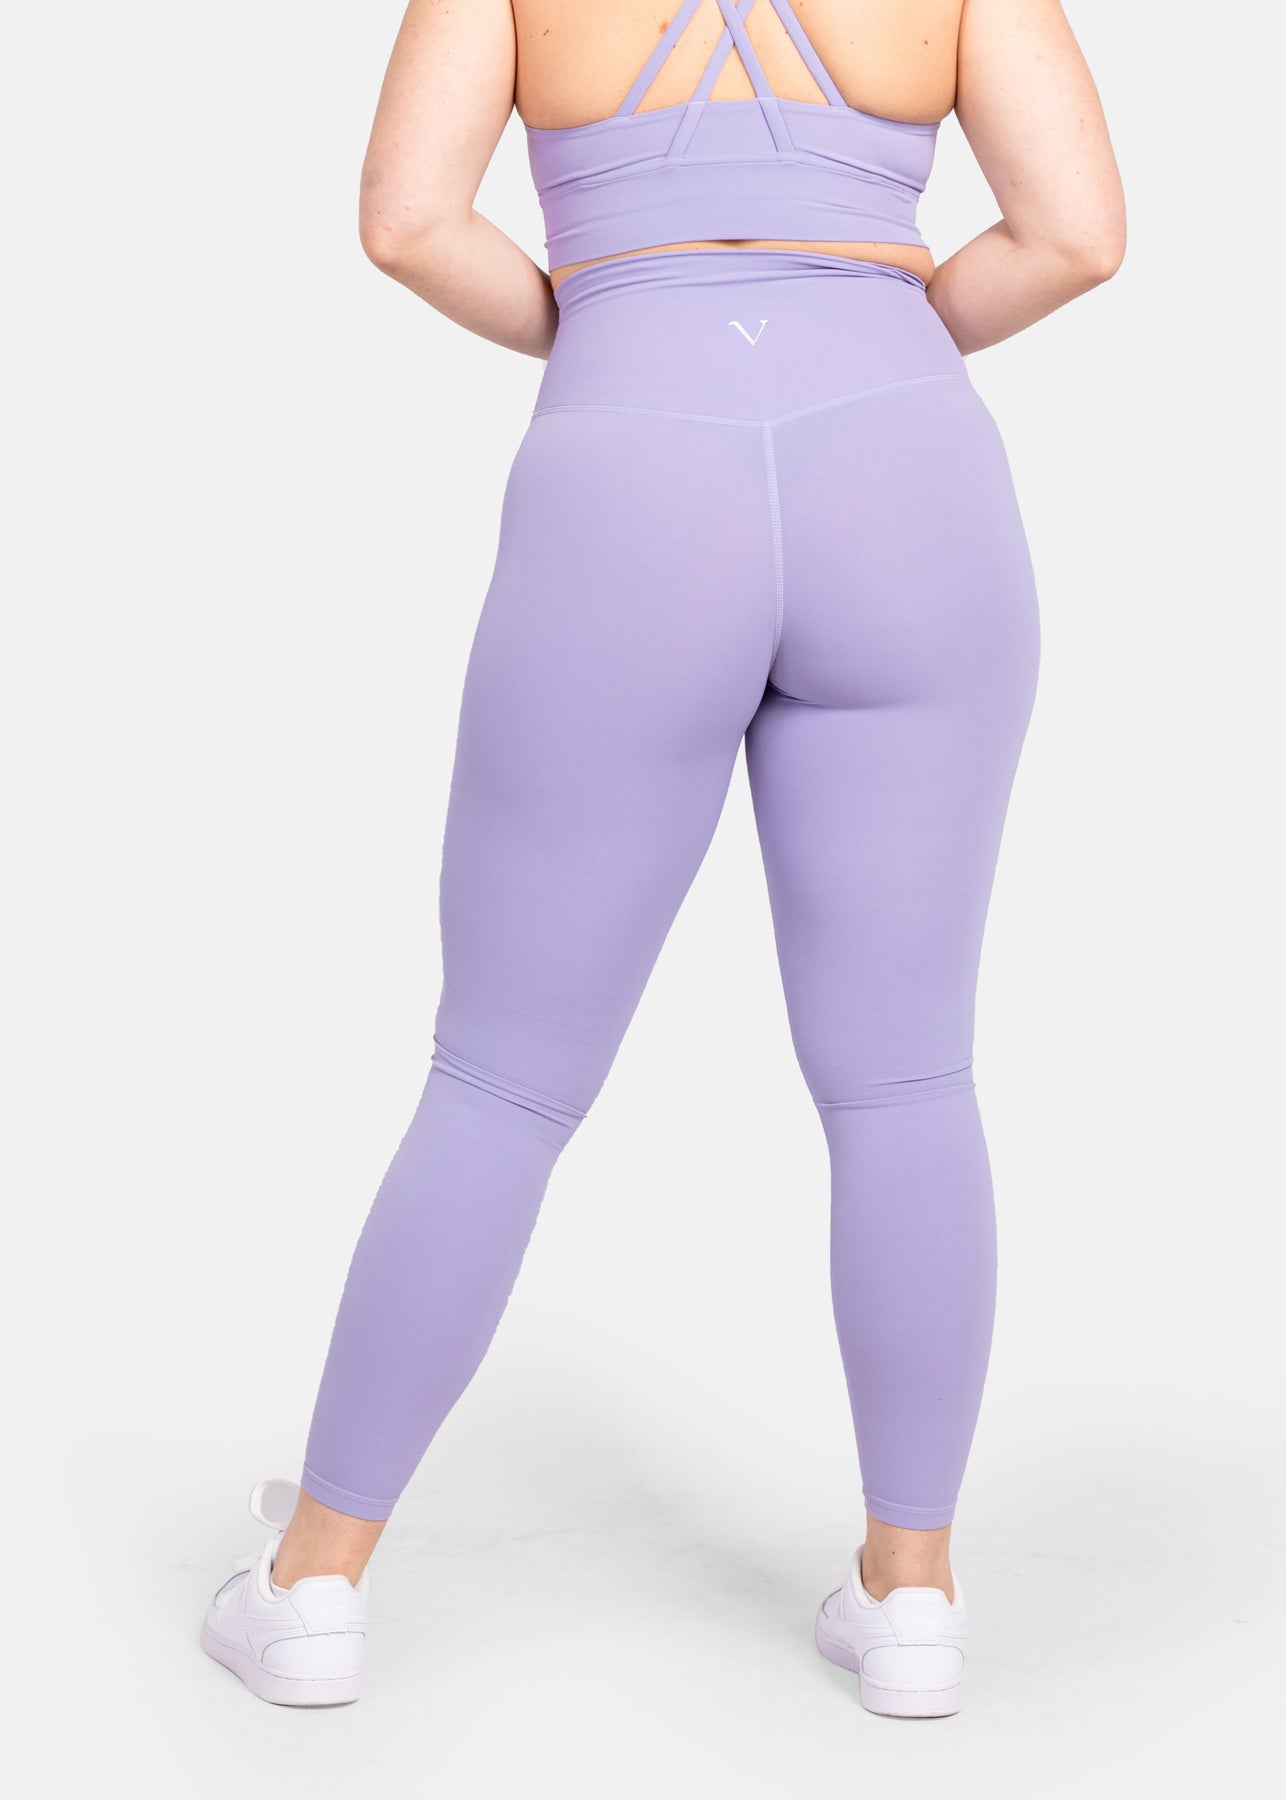 Purple workout legging – Lecurveculture & Allenmichael Collection